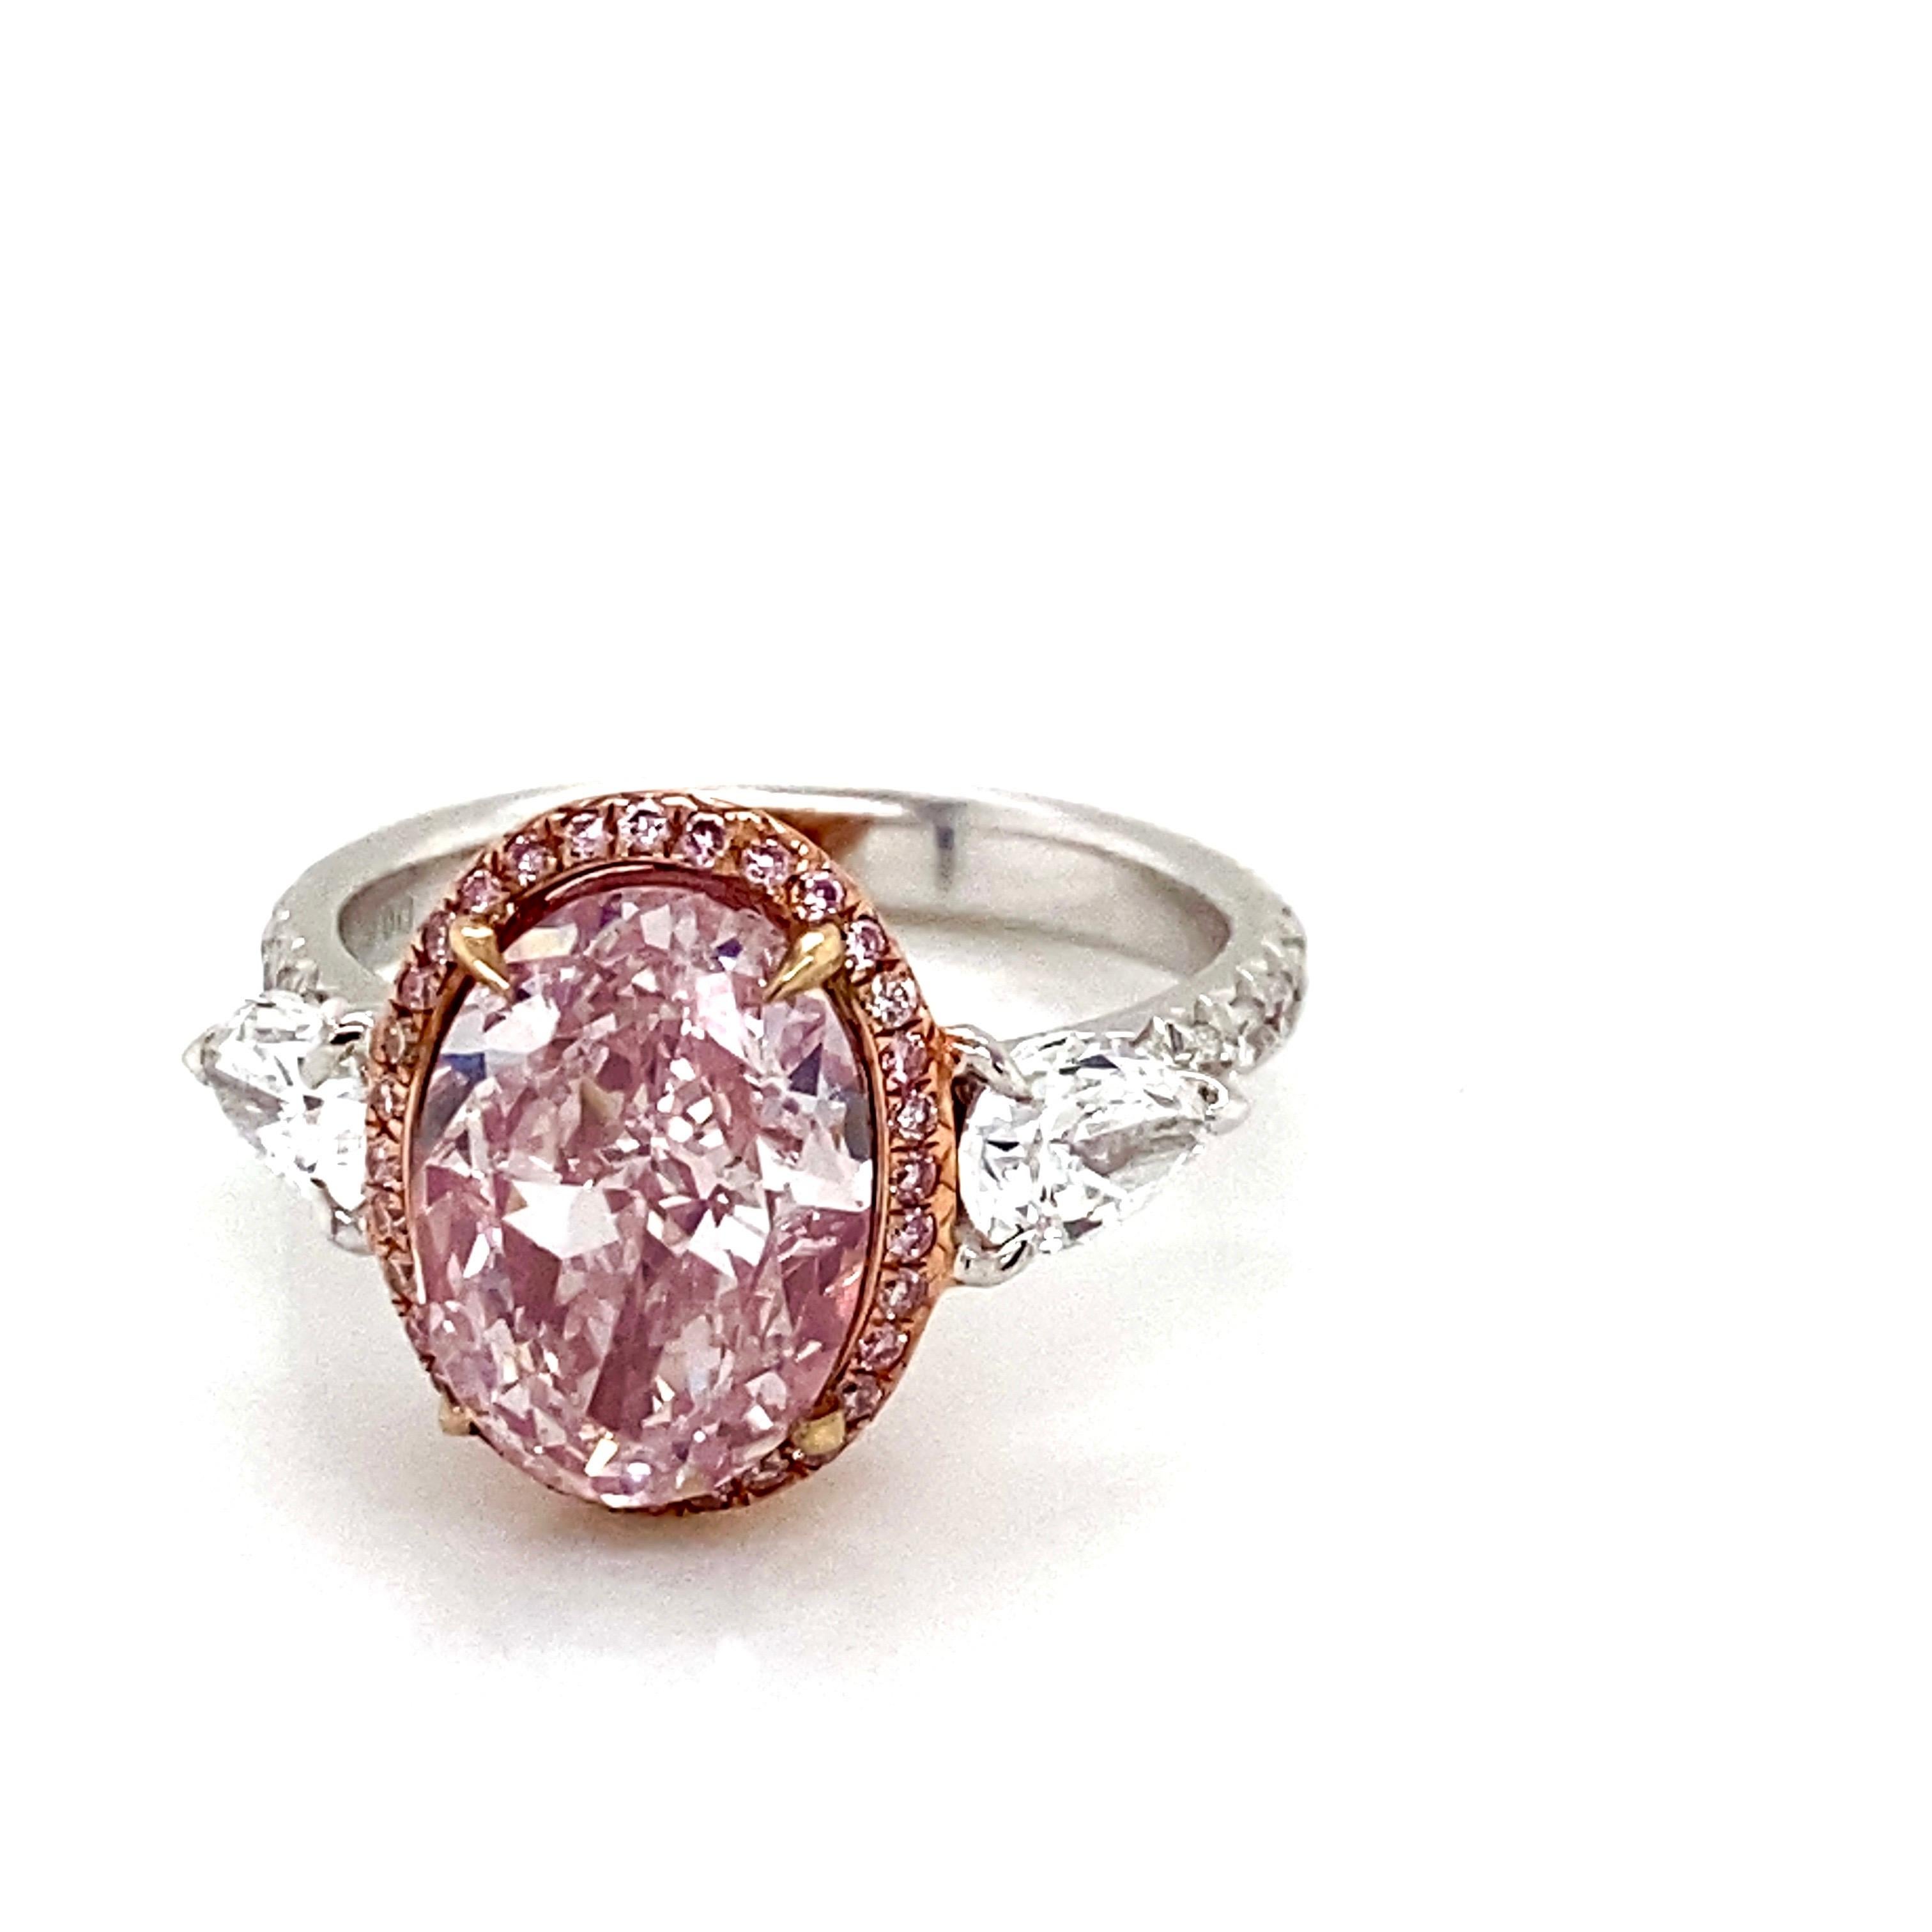 En provenance du coffre-fort du musée Emilio Jewelry, présentant un magnifique diamant ovale de 3,00 carats de couleur naturelle rose clair pur certifié Gia, serti au centre. La taille du diamant est exceptionnelle, et le diamant rose est pur, sans